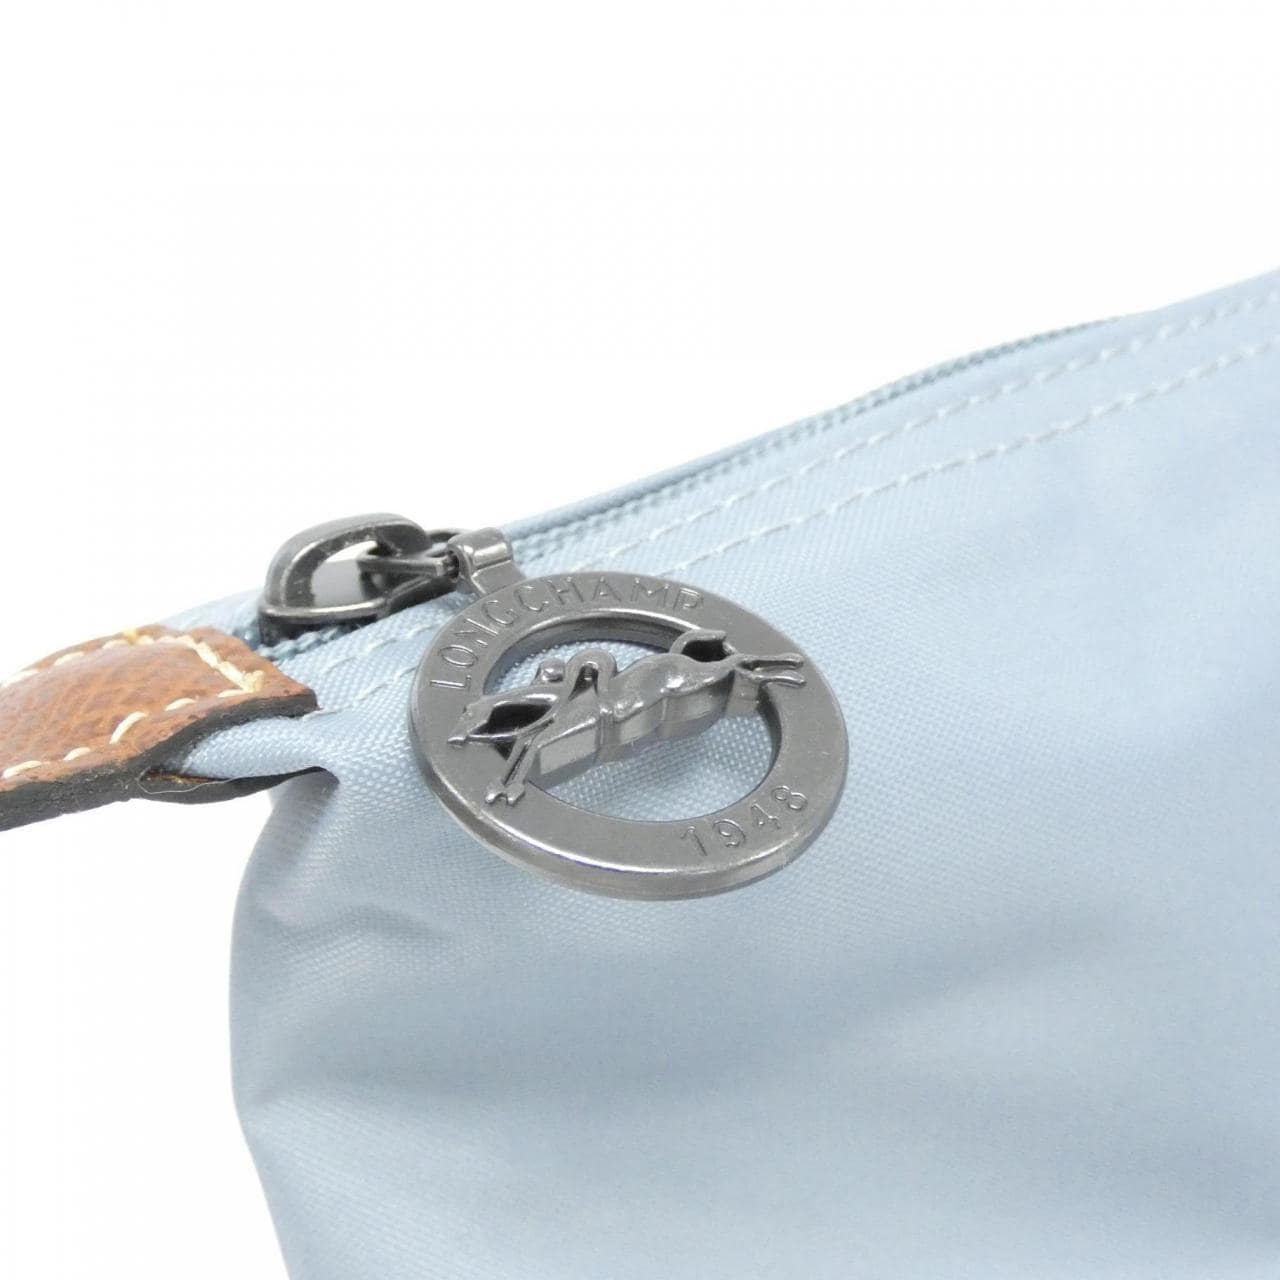 [BRAND NEW] Longchamp Le Pliage 1625 089 Boston Bag